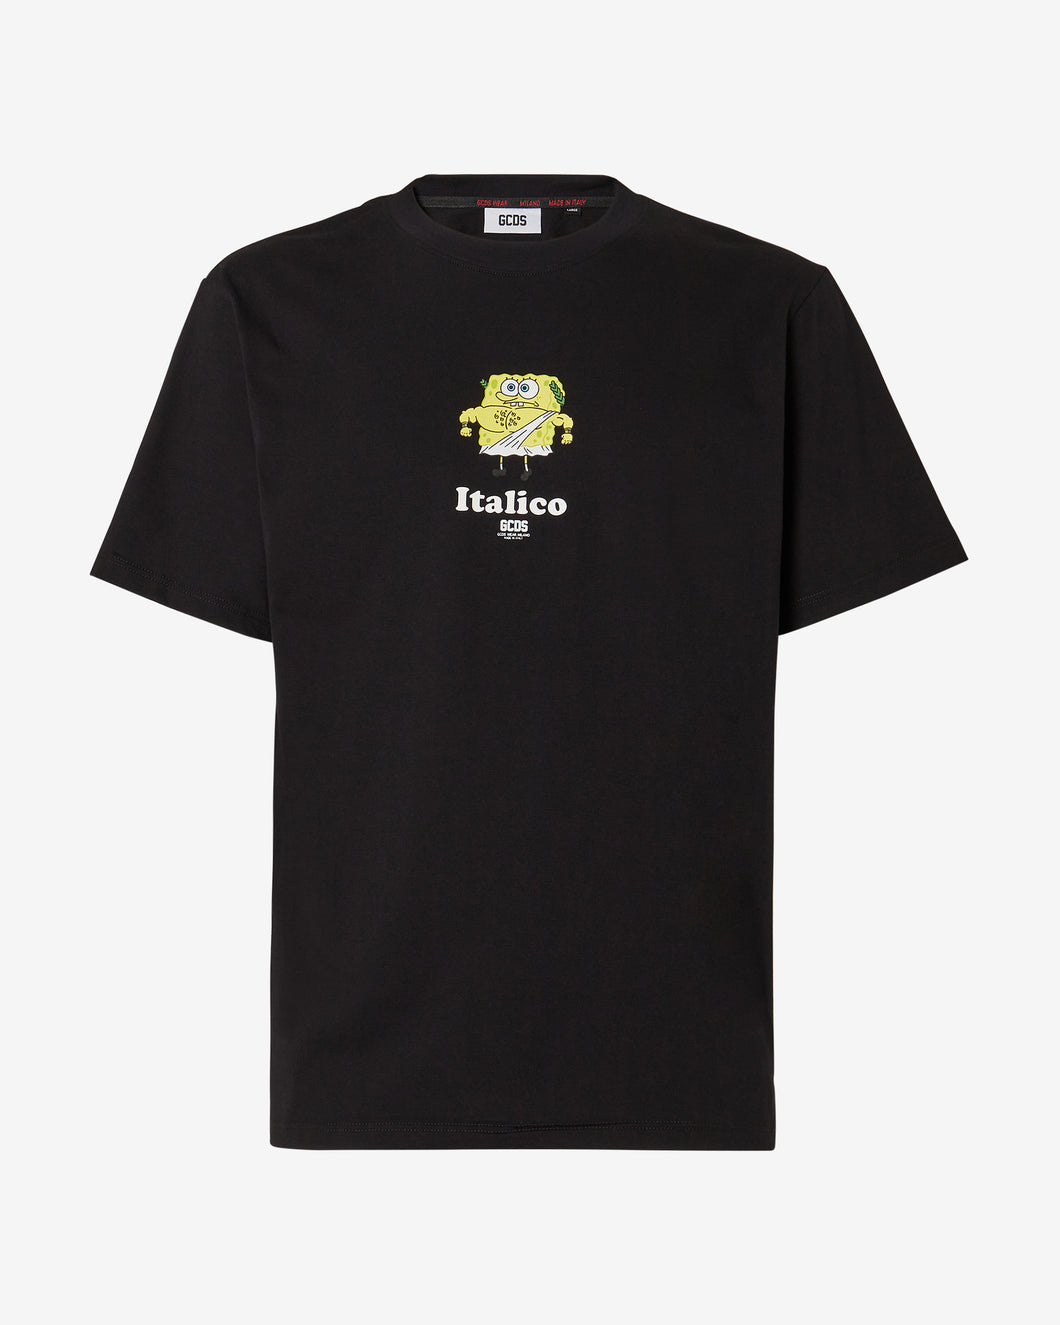 Spongebob Italico Basic T-Shirt : Men T-shirts Black | GCDS